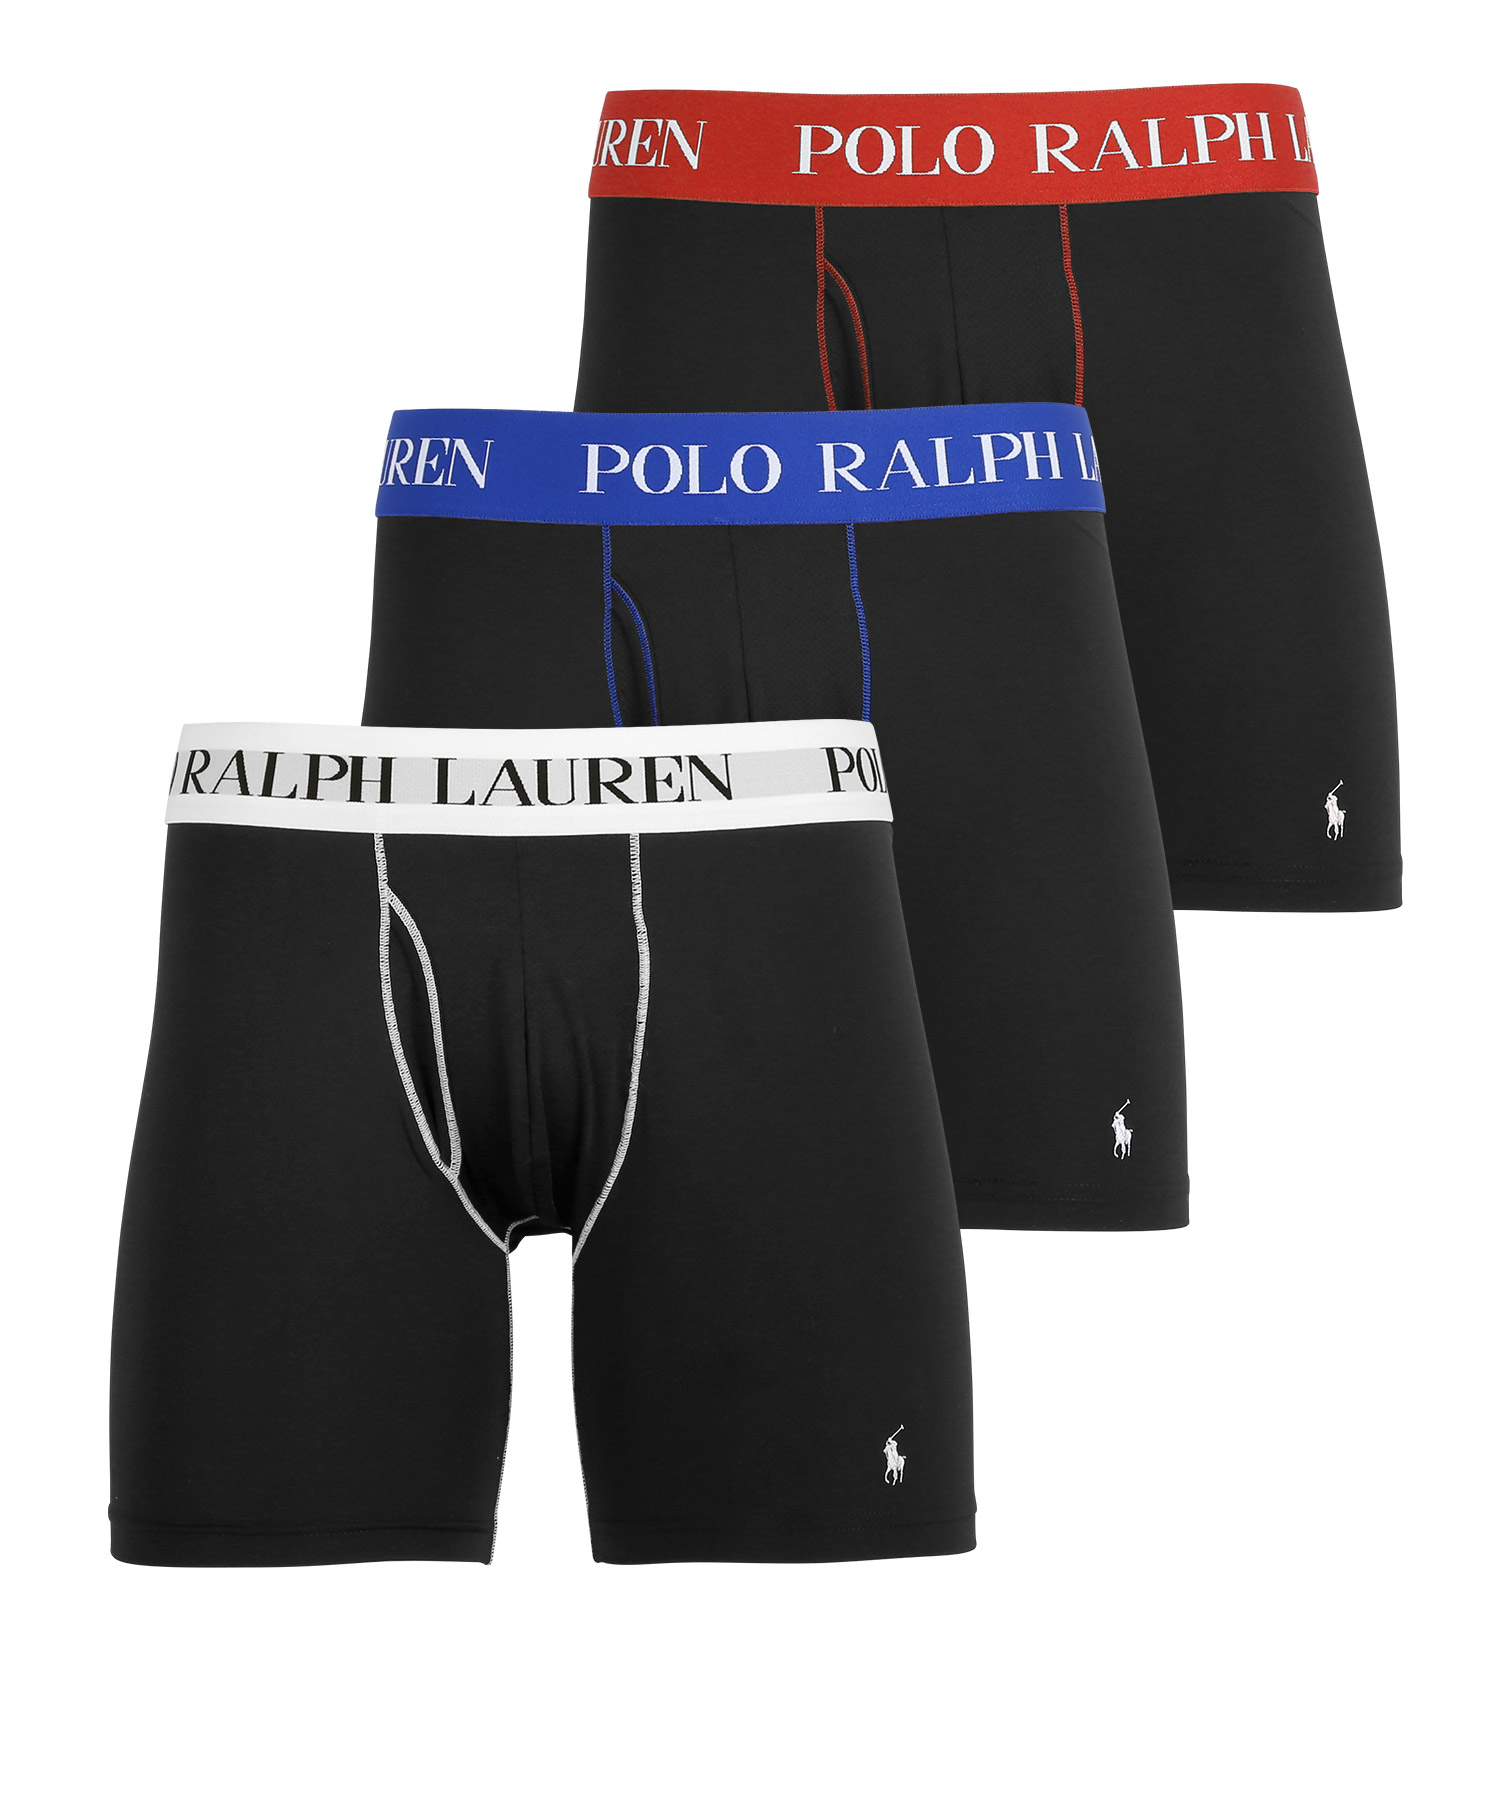 ポロ ラルフローレン POLO RALPH LAUREN ロングボクサーパンツ 3枚セット メンズ アンダーウェア ツルツル 速乾 前開き ブランド  ロゴ 高級 ハイブランド